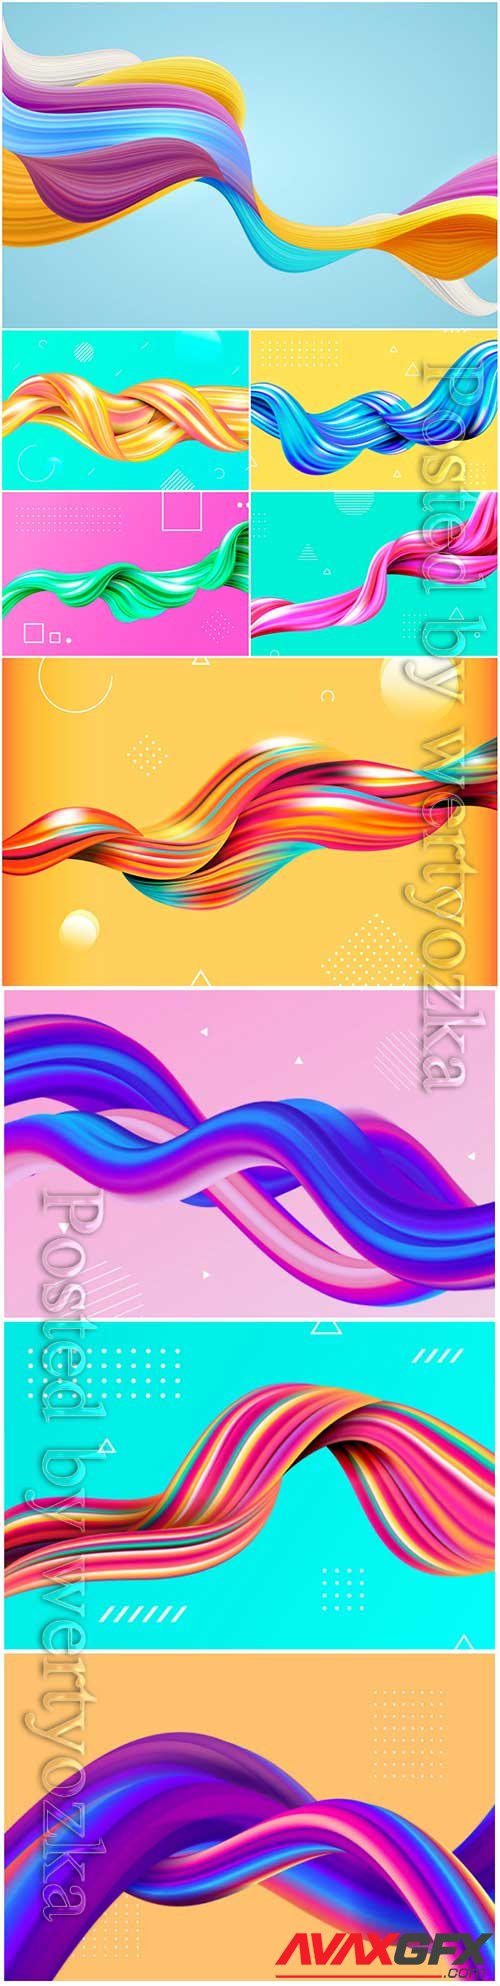 Color flow background vector illustration